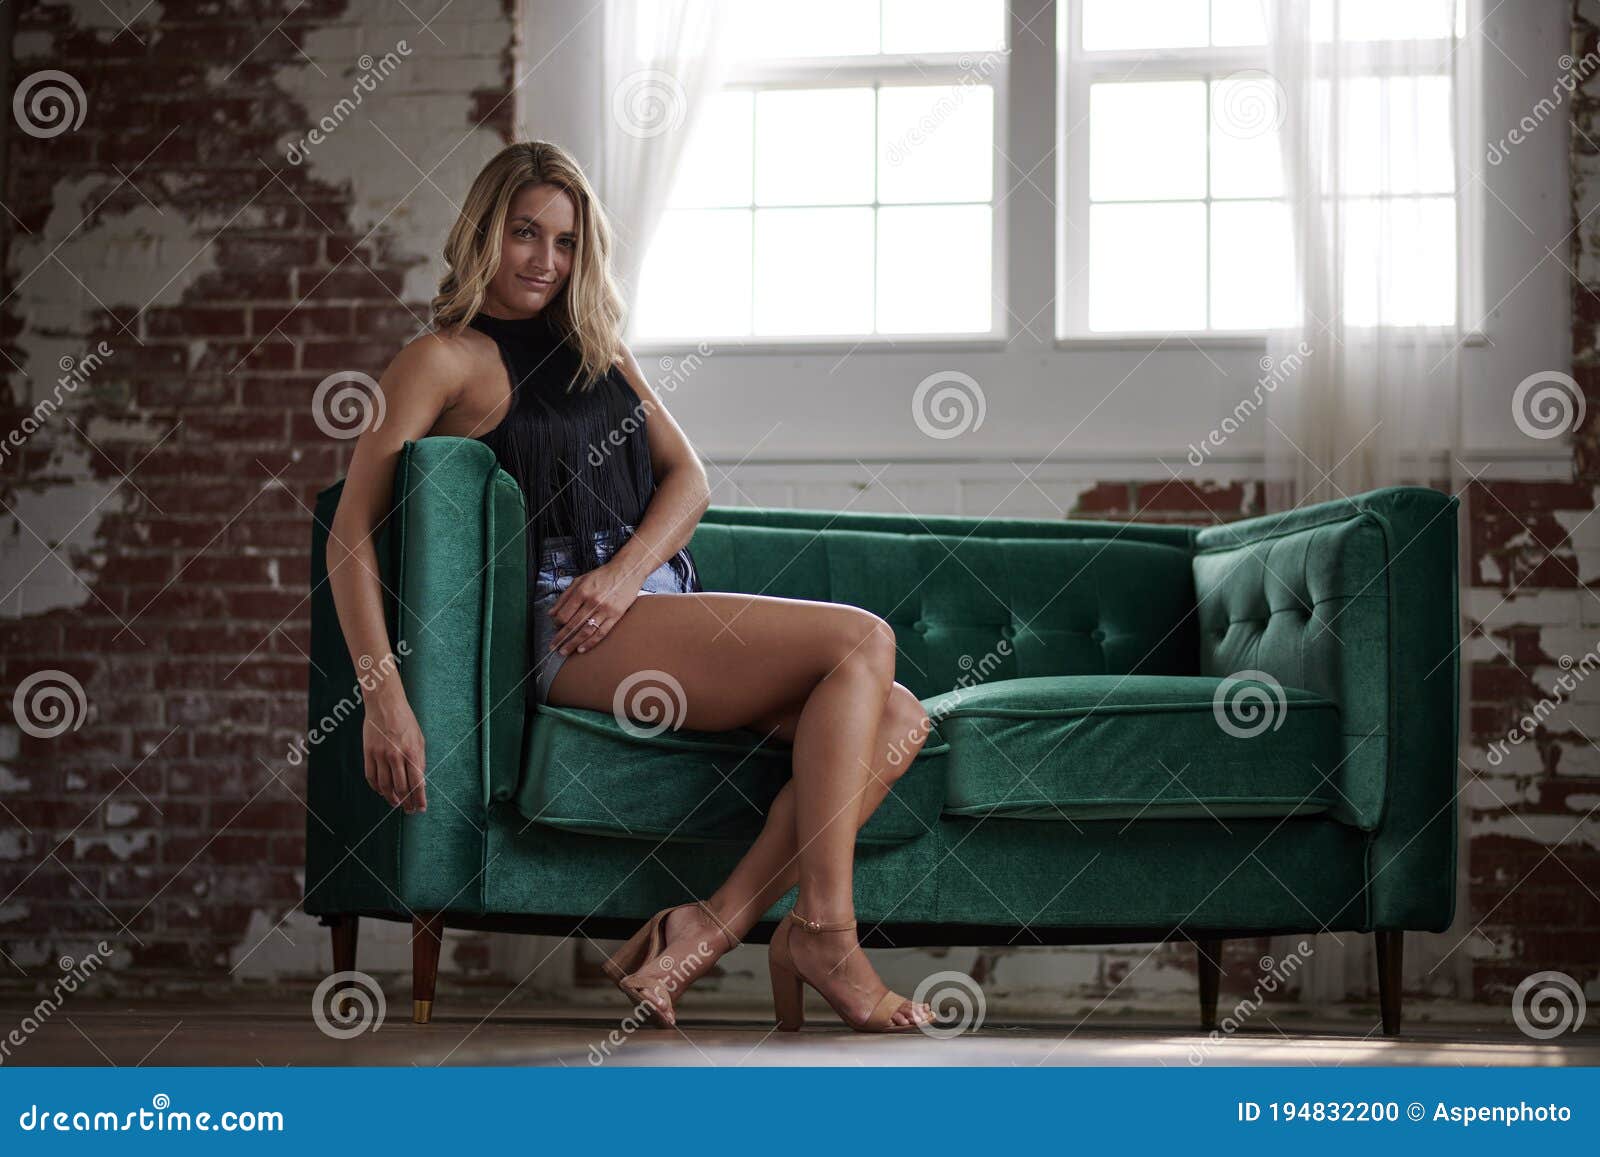 Сексуальная девчонка на диванчике